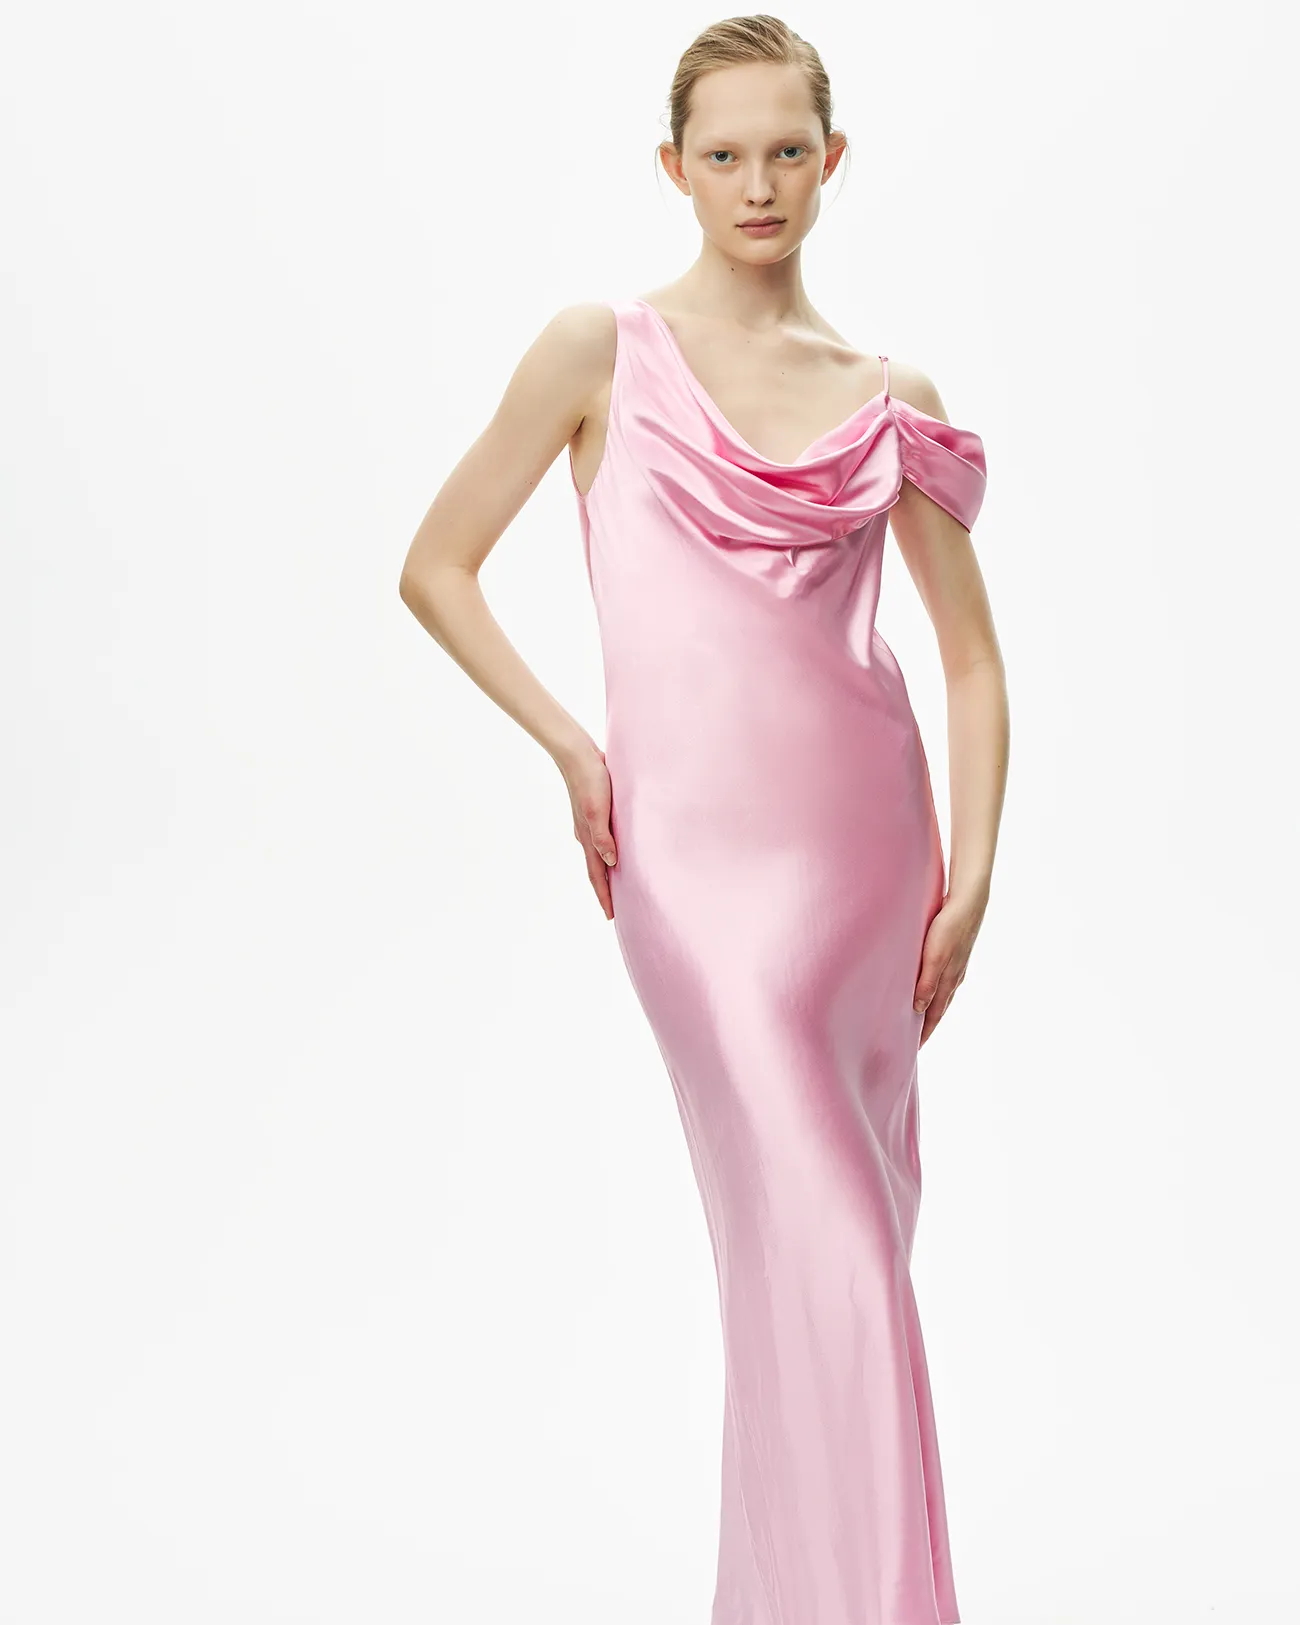 Платье-комбинация асимметричное розового цвета